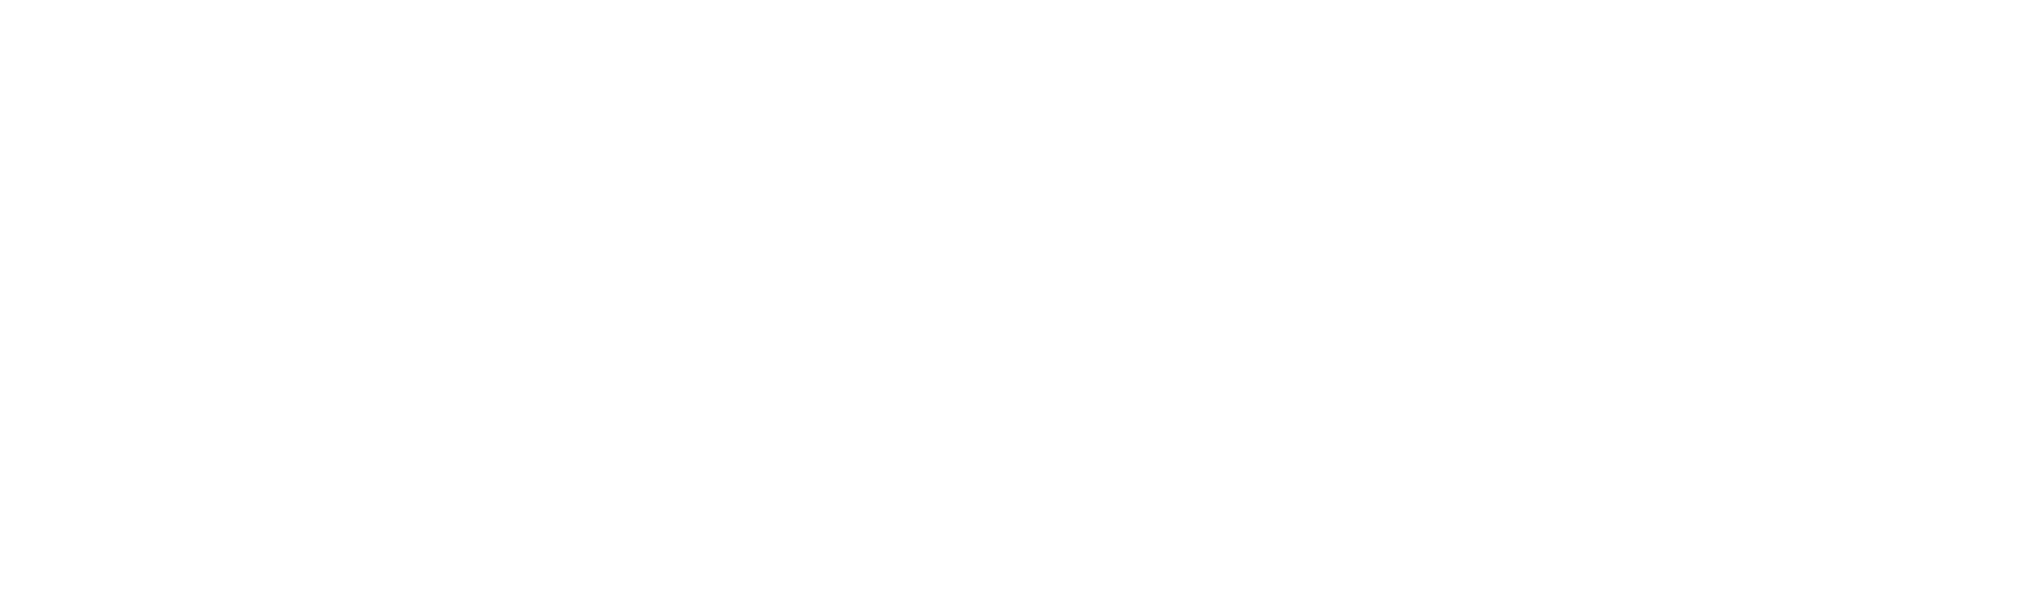 HEMBC-full-logo-white.png